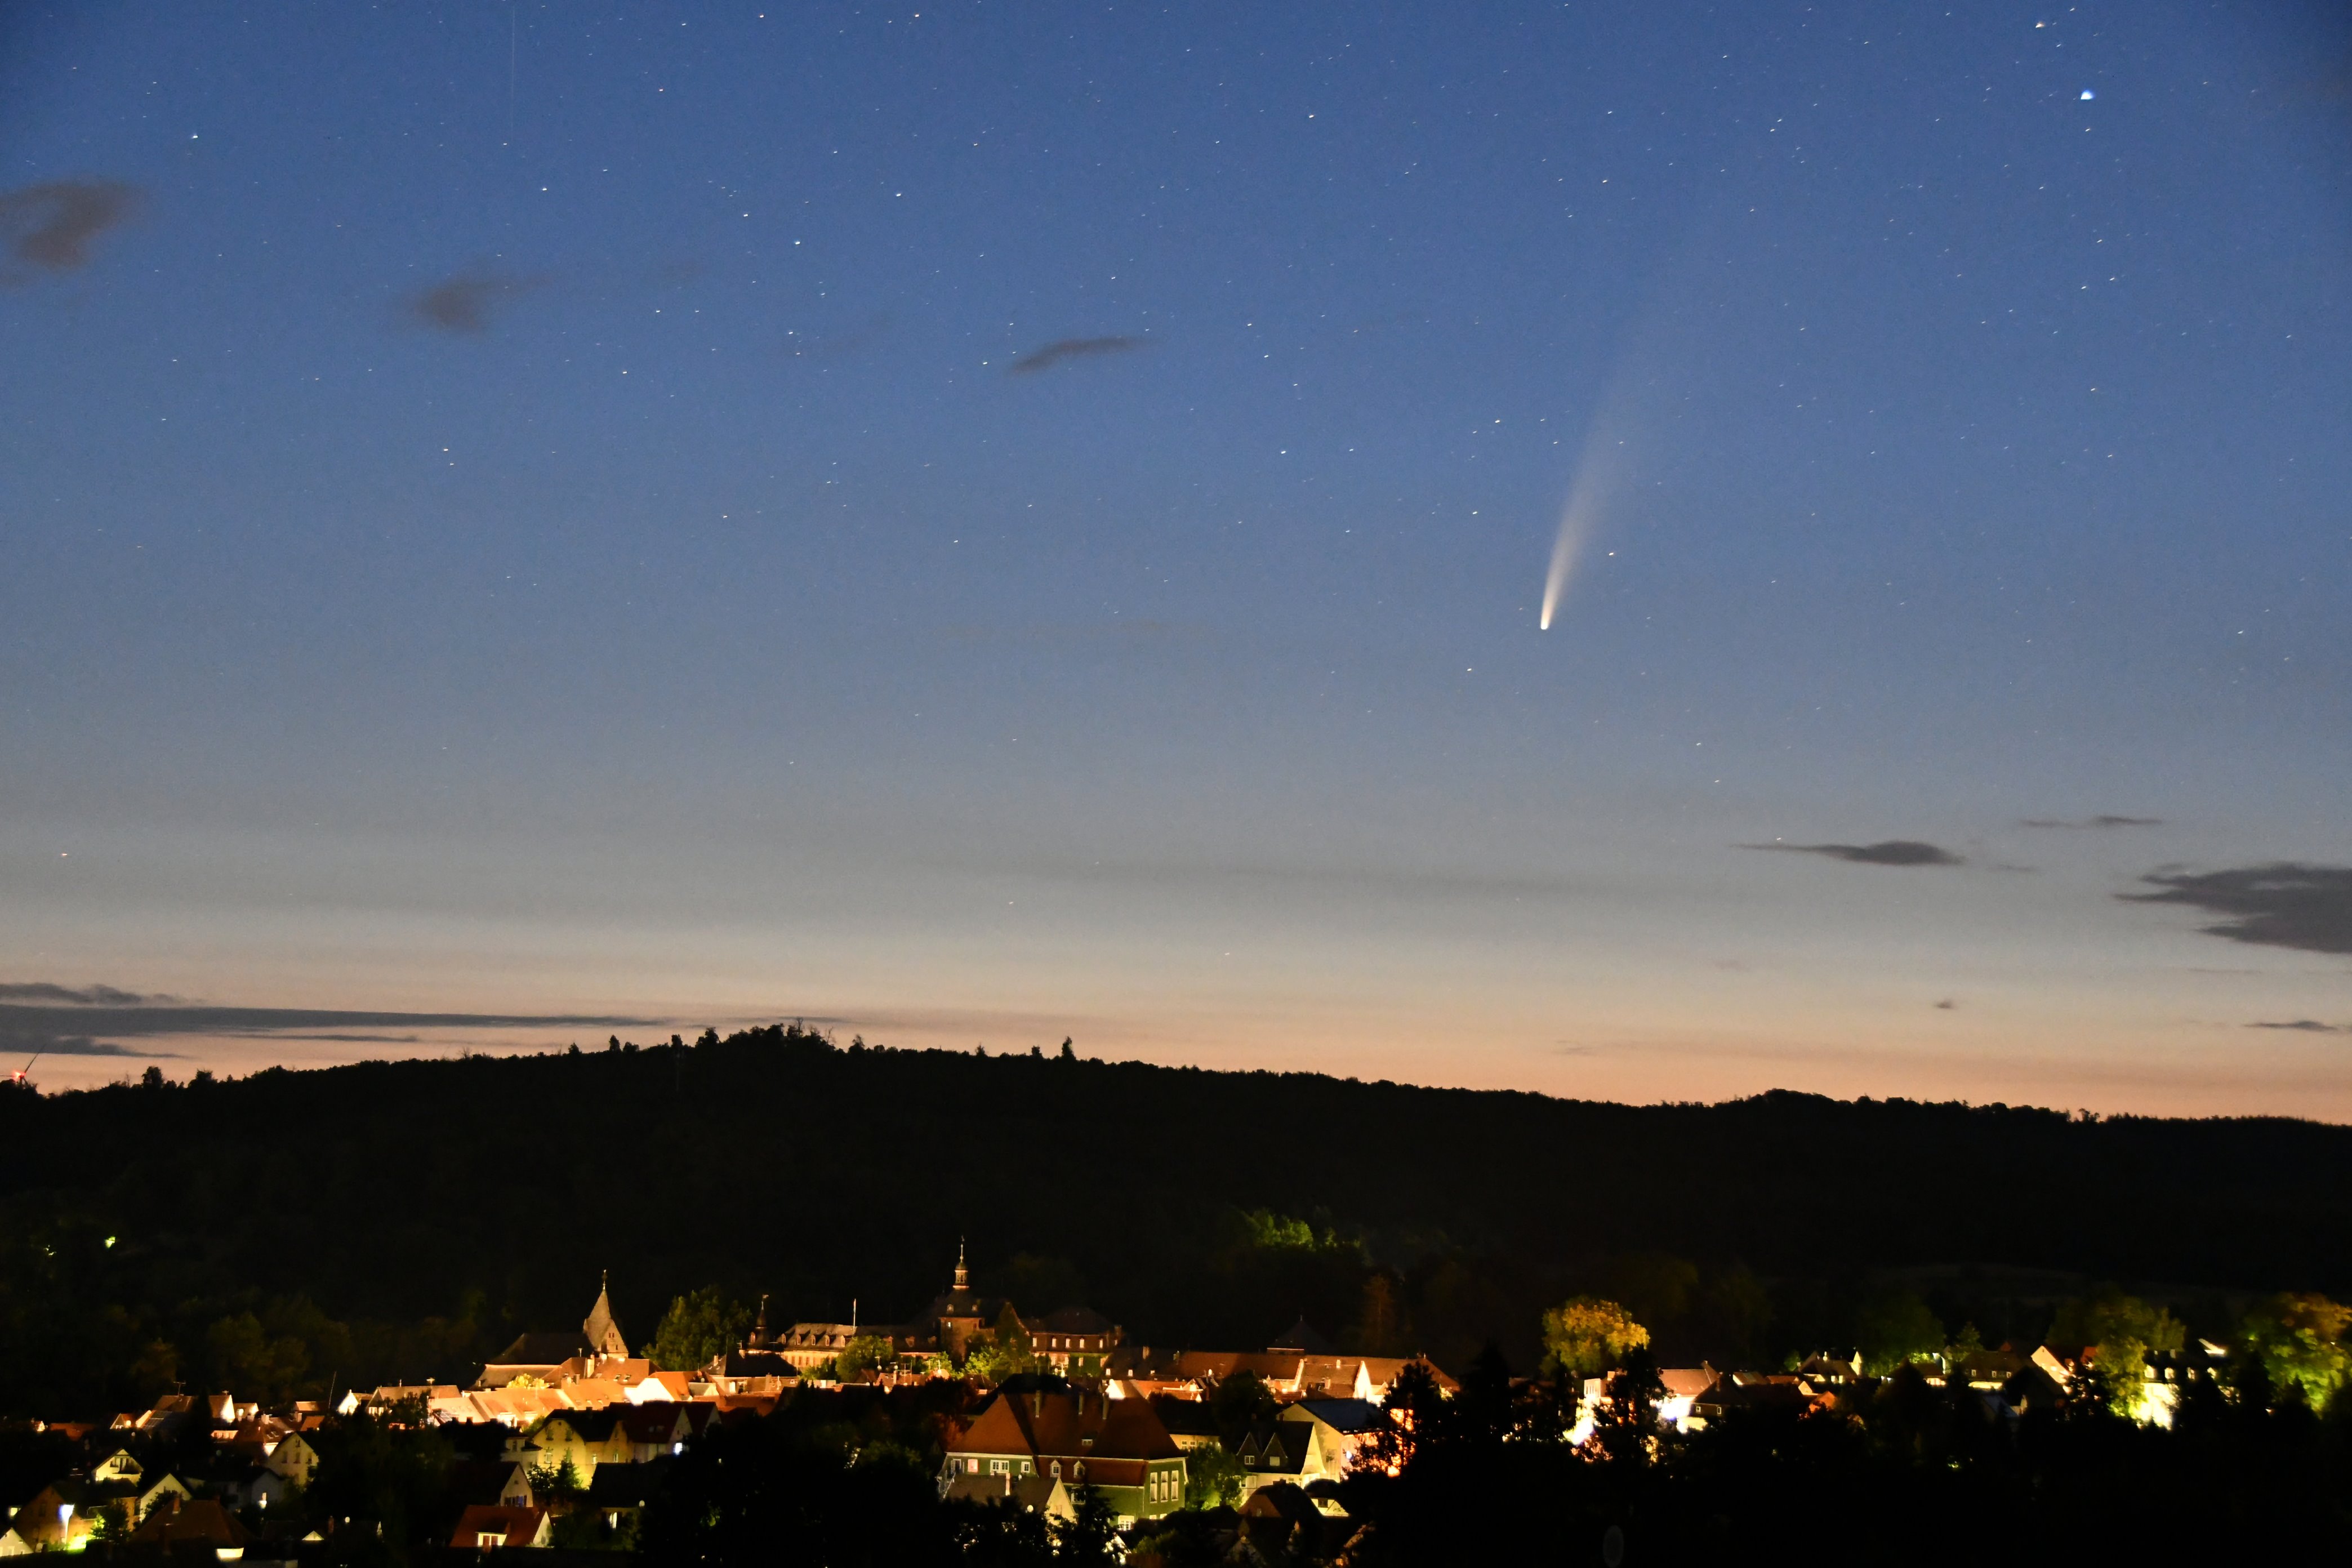 Der Komet Neowise gegen 03:30 Uhr am 11.07.2020 über dem Ramsberg bei Laubach (F/4.5; Belichtungszeit: 8 sek.; ISO3200; Brennweite: 40 mm) mit Nikon D7500